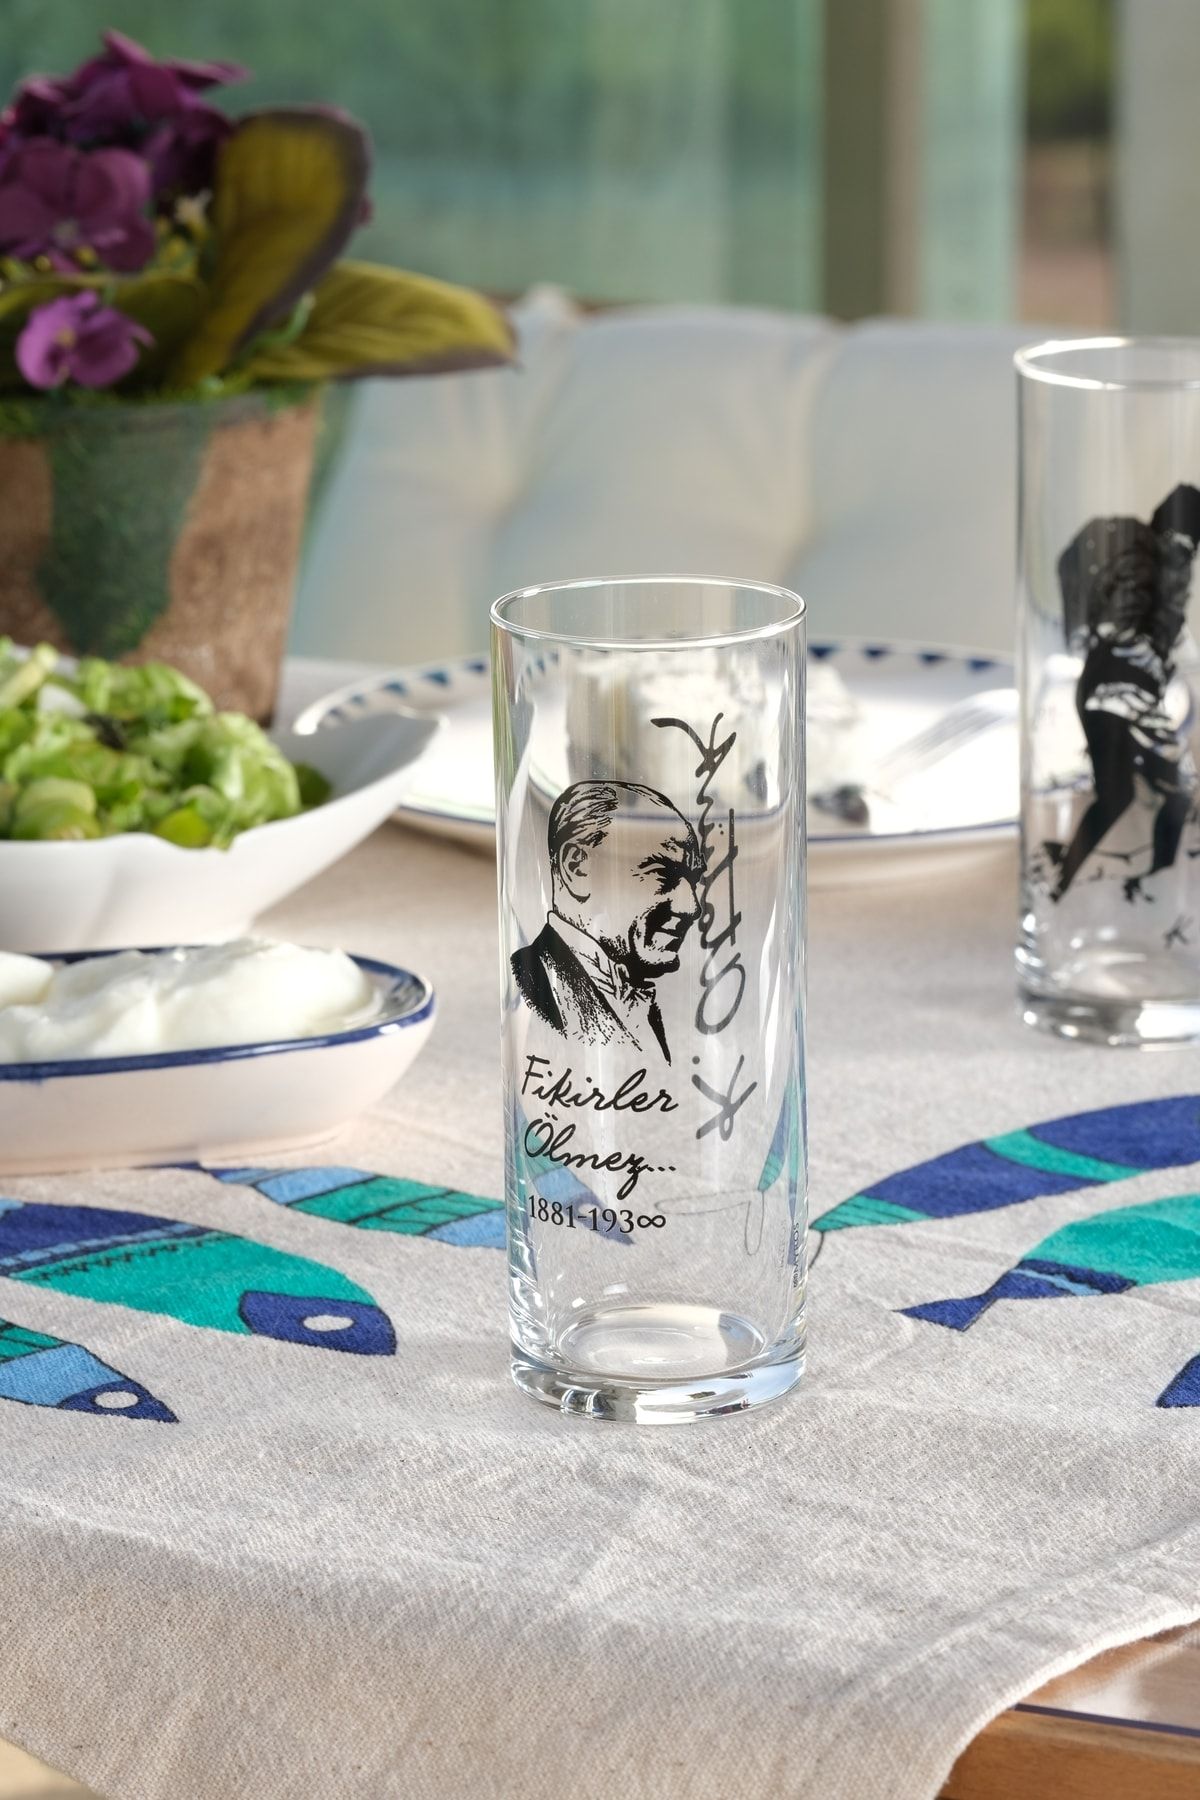 Myros Atatürk Temalı Baskılı Bardağı 5 Nolu Tasarım